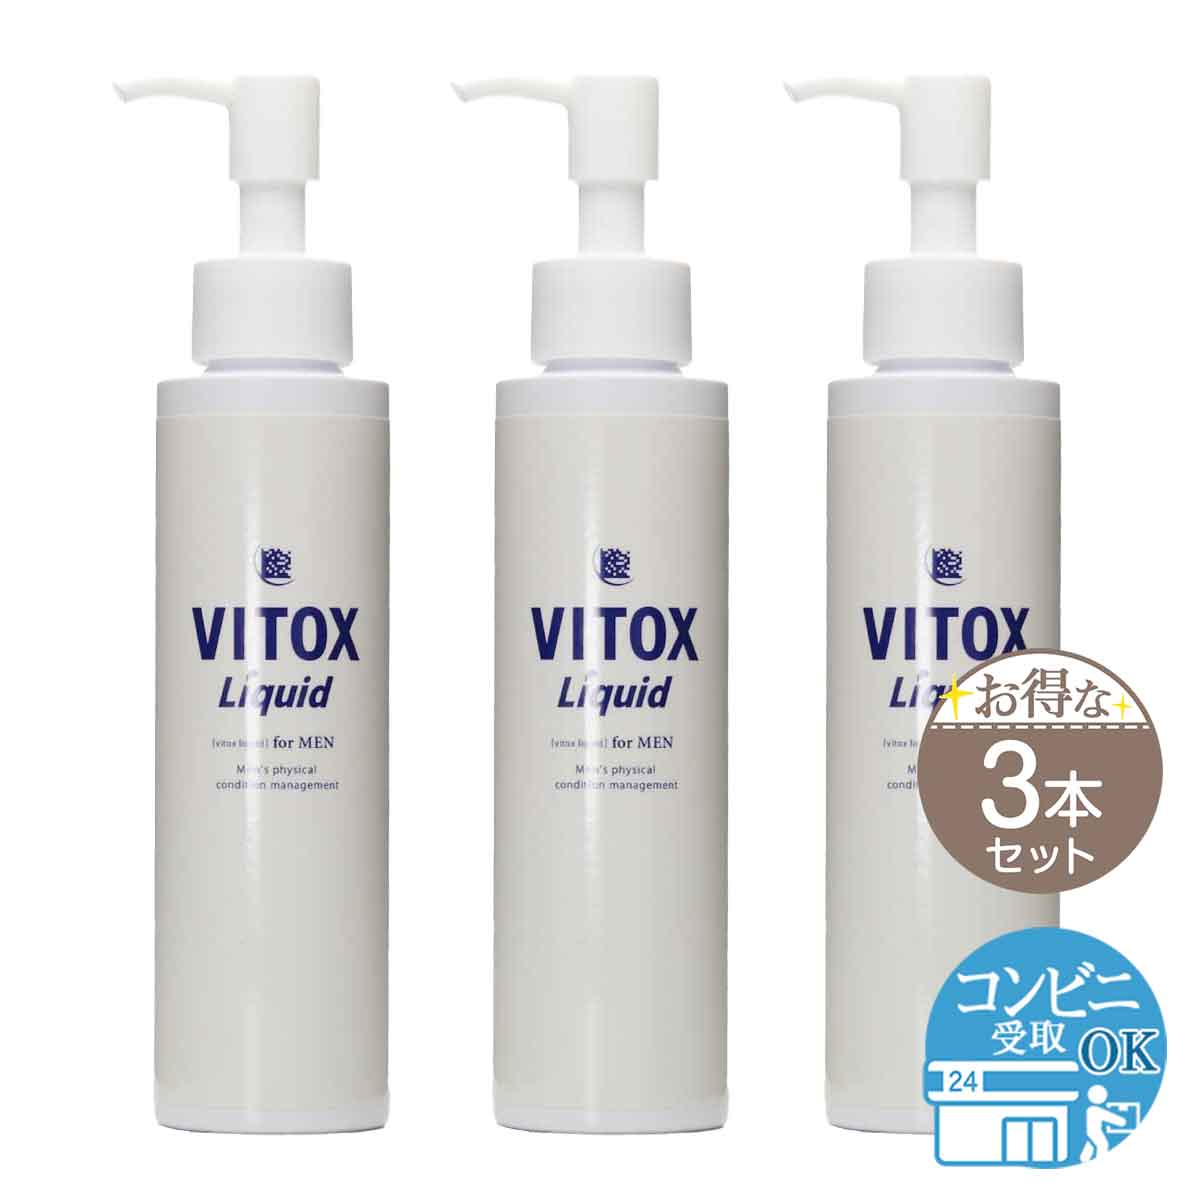 3本セット 】 ヴィトックス リキッド vitox liquid 120ml ( 約1ヵ月分